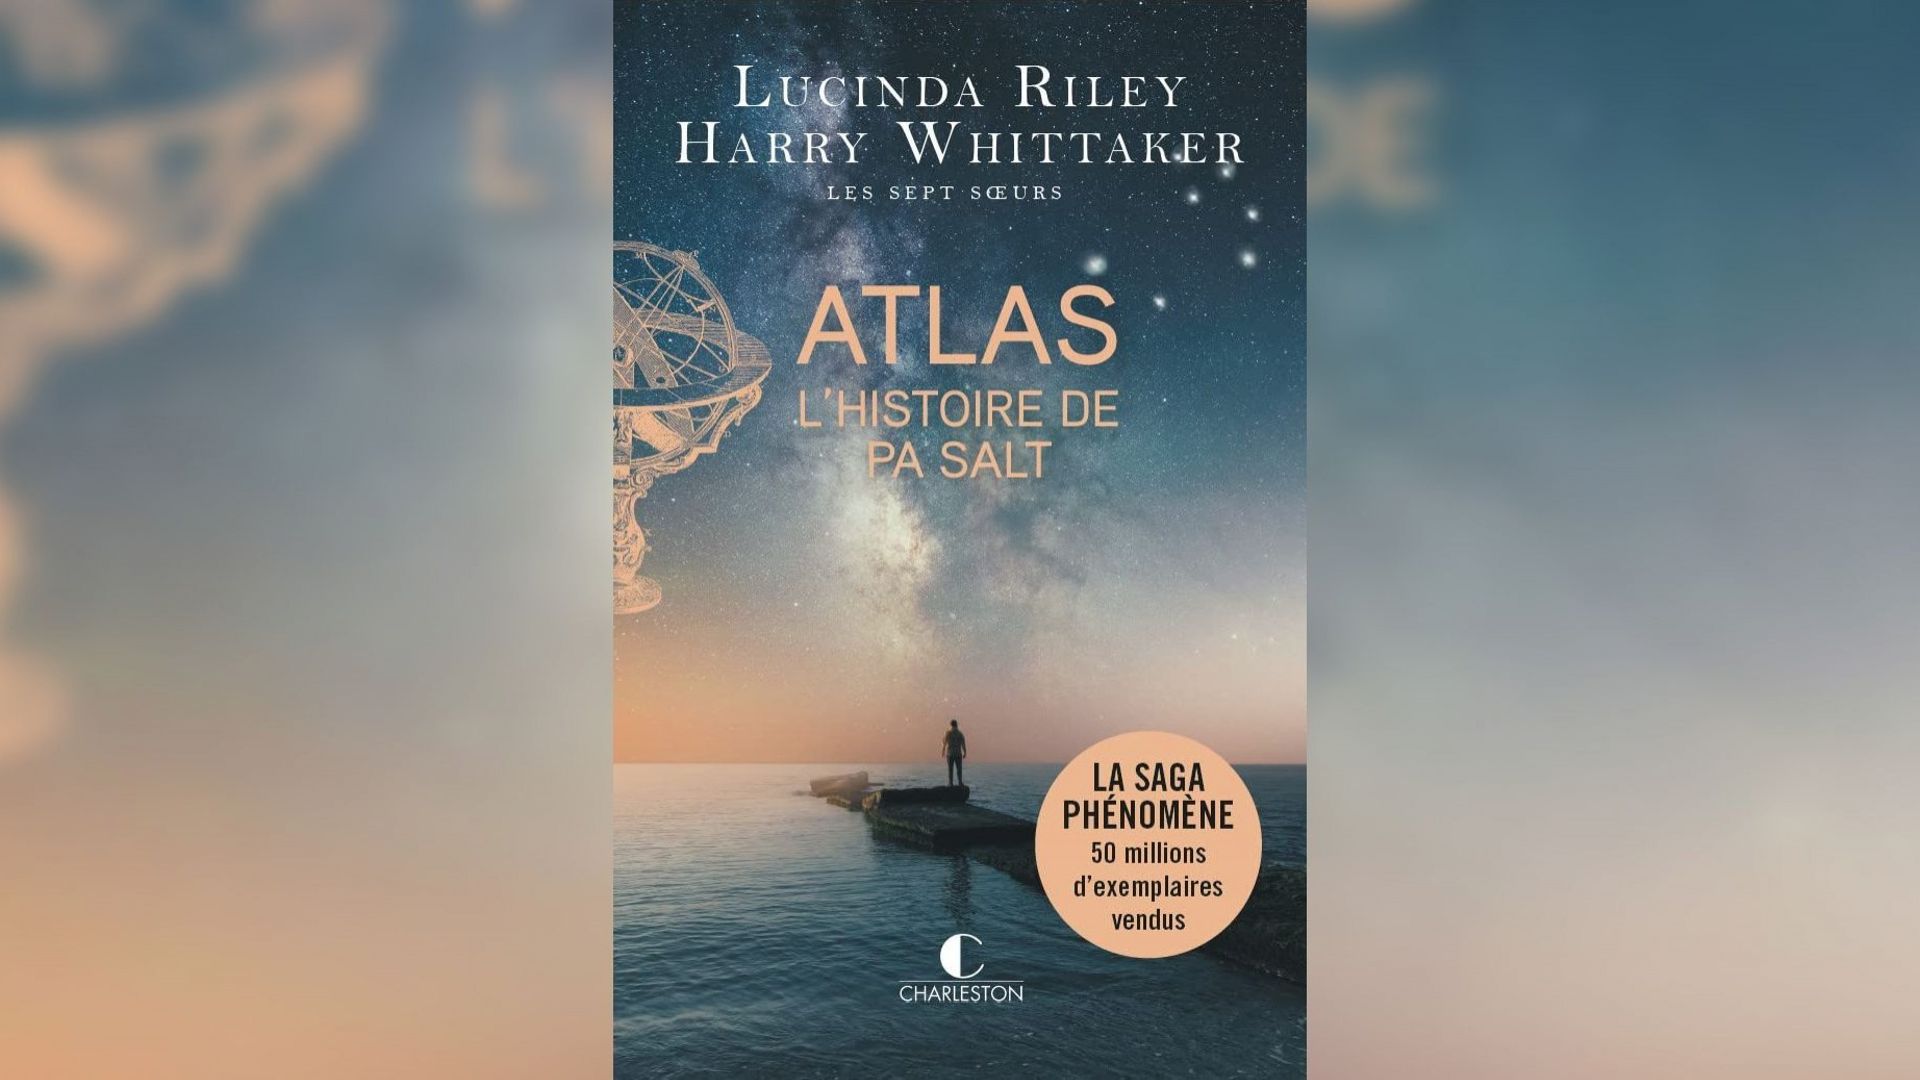 "Atlas, l’histoire de Pa Salt" sort le 11 mai.